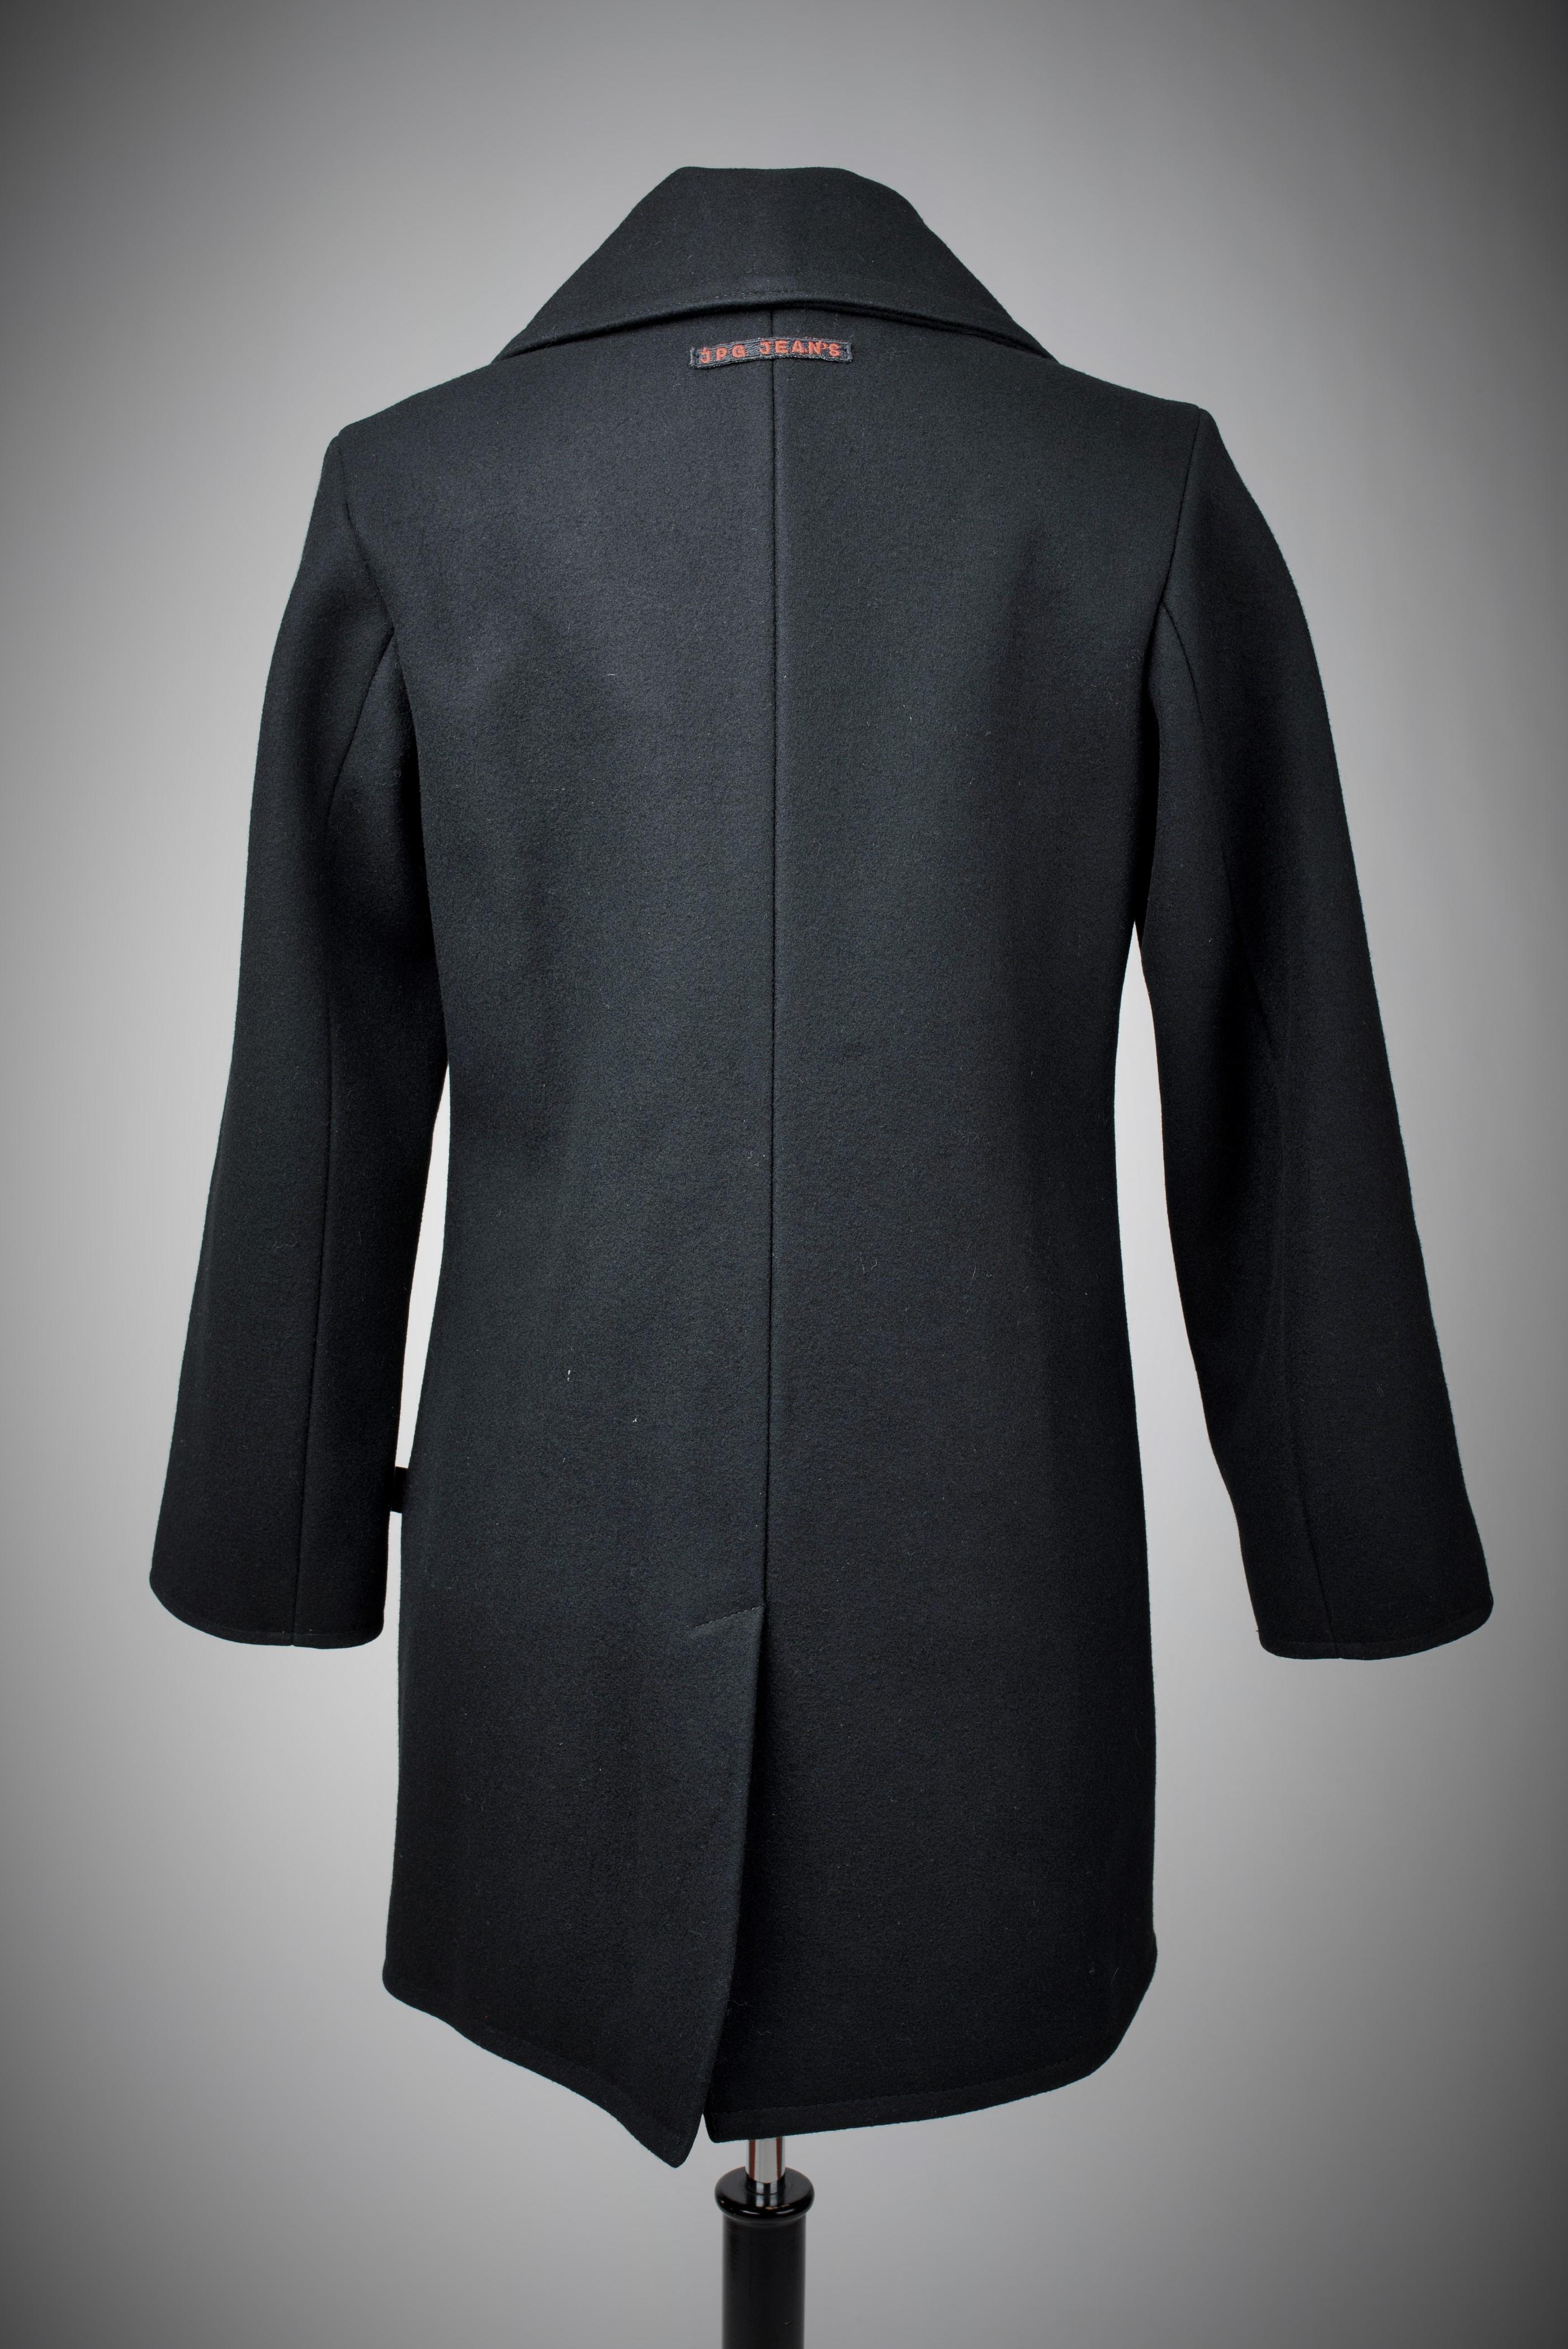 JPG.Jean's black wool coat by Jean-Paul Gaultier - France Circa 2010 For Sale 3